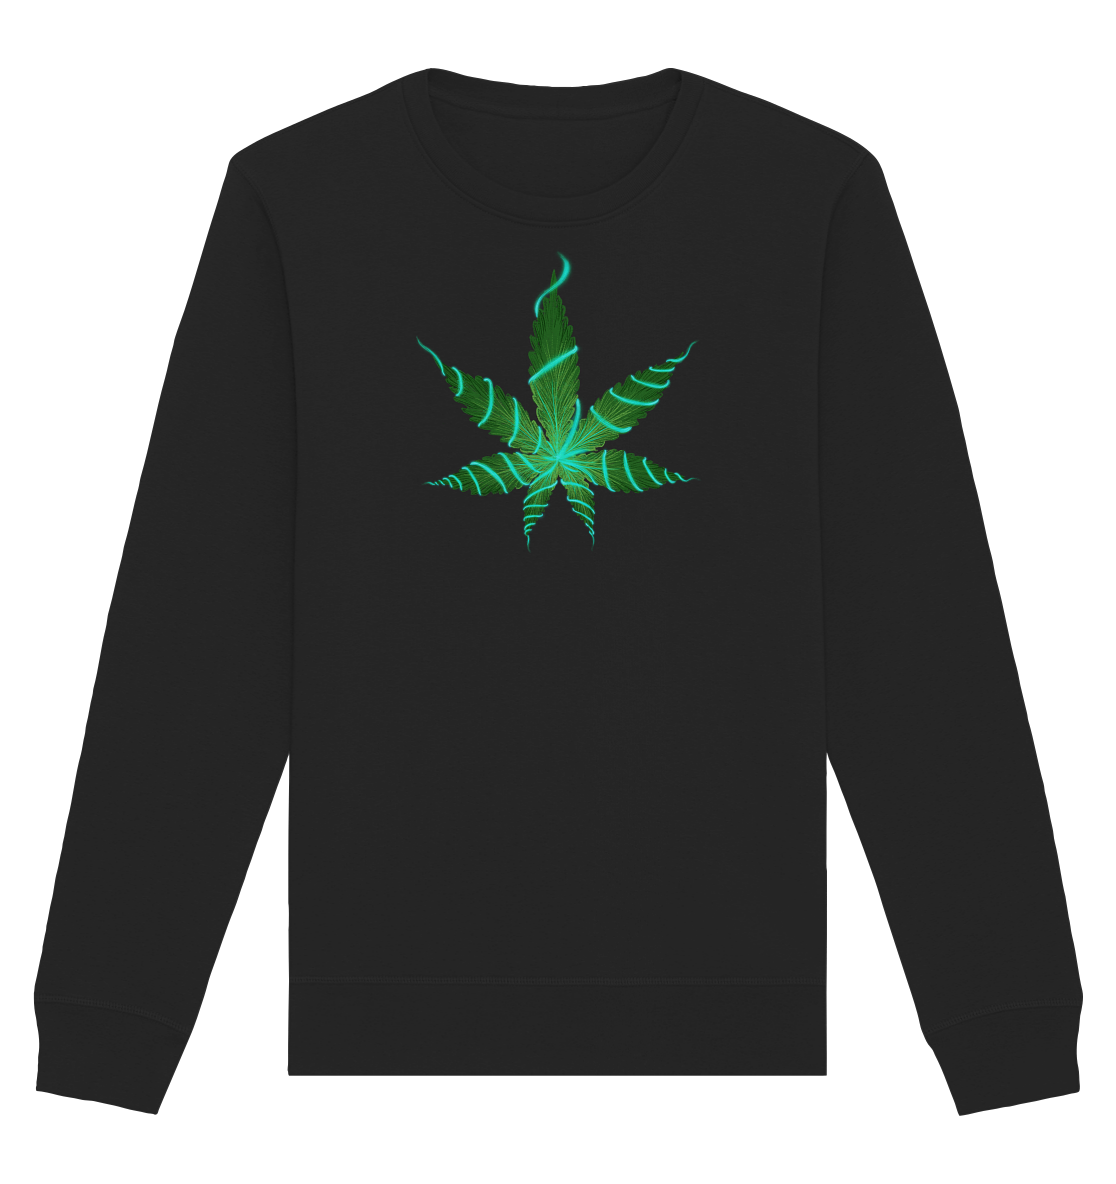 Brokkoliblatt - Organic Unisex Sweatshirt